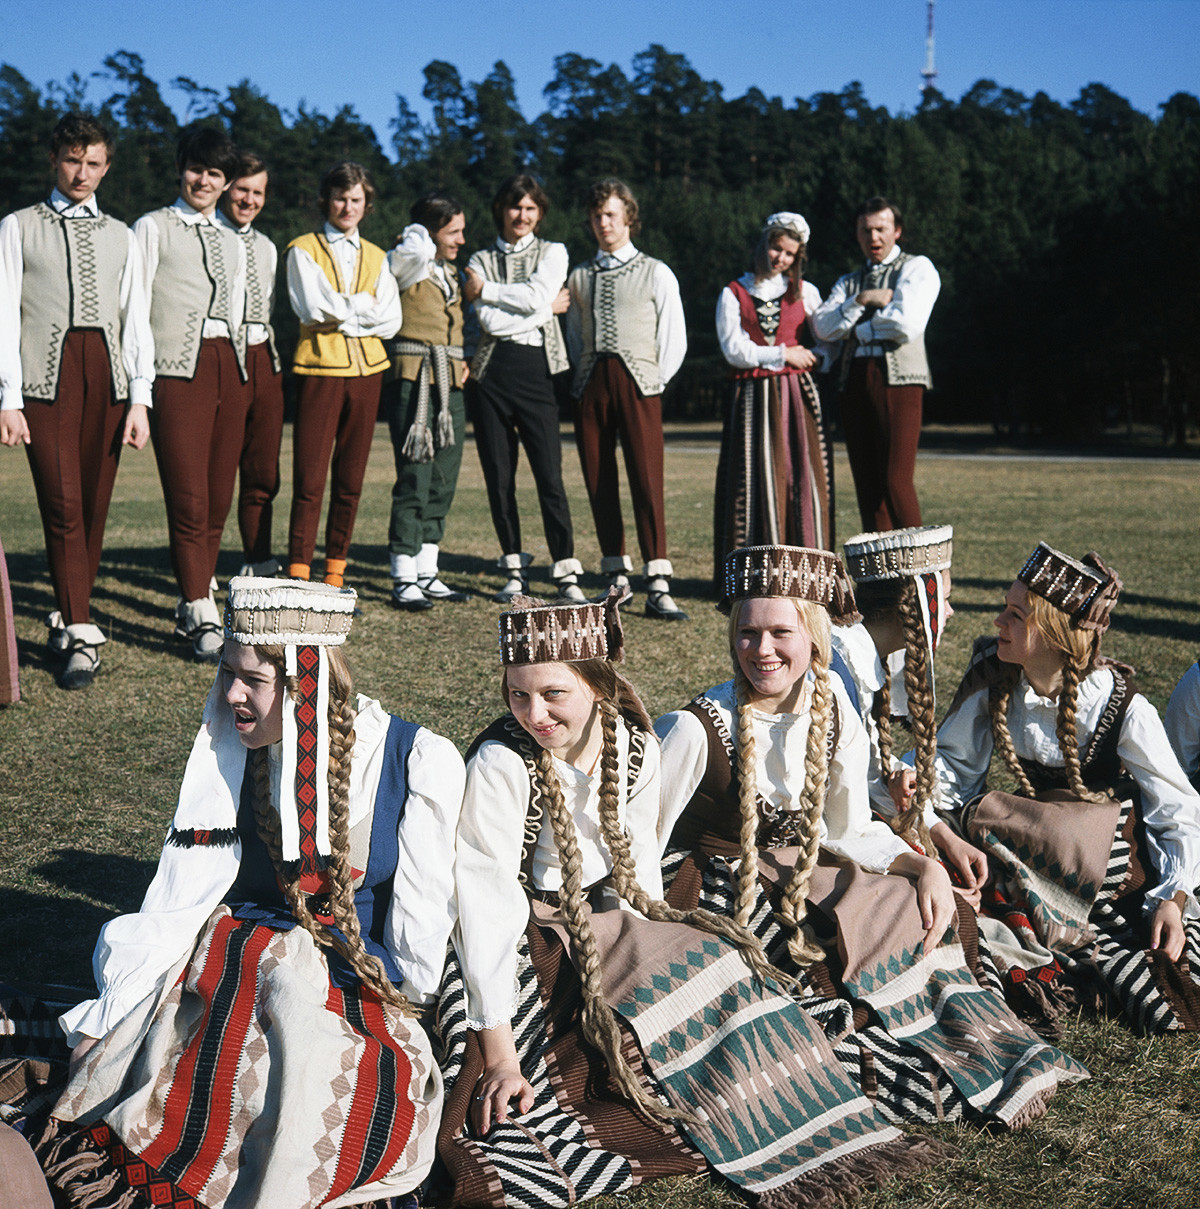 1974 година. Членови на ансамблот на народни танци и песни на Вилнускиот државен универзитет.
